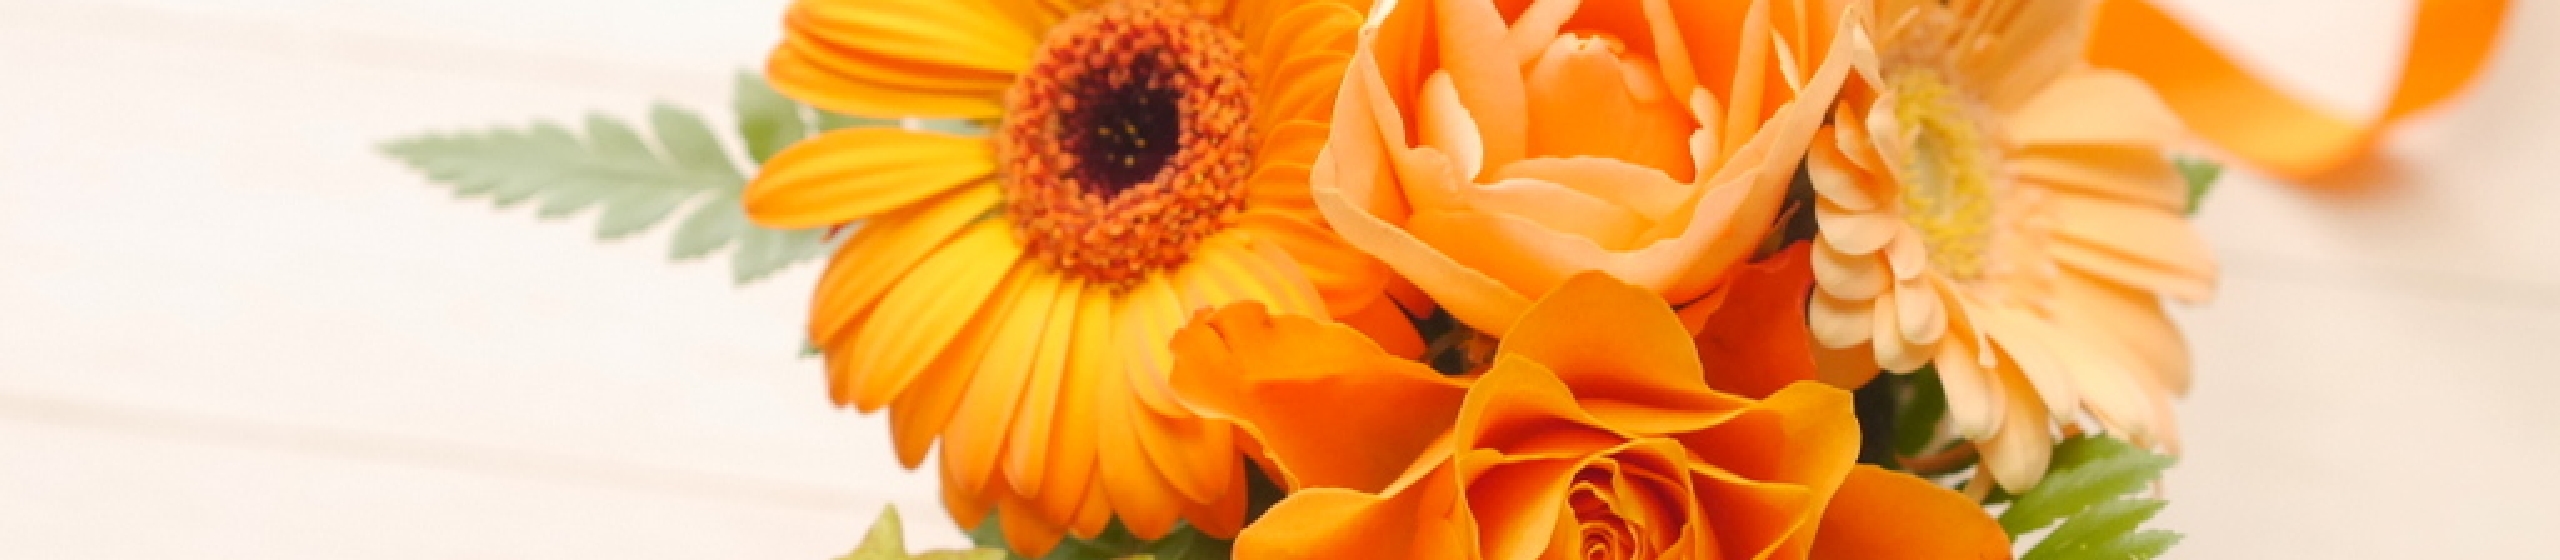 オレンジ色の花束の写真